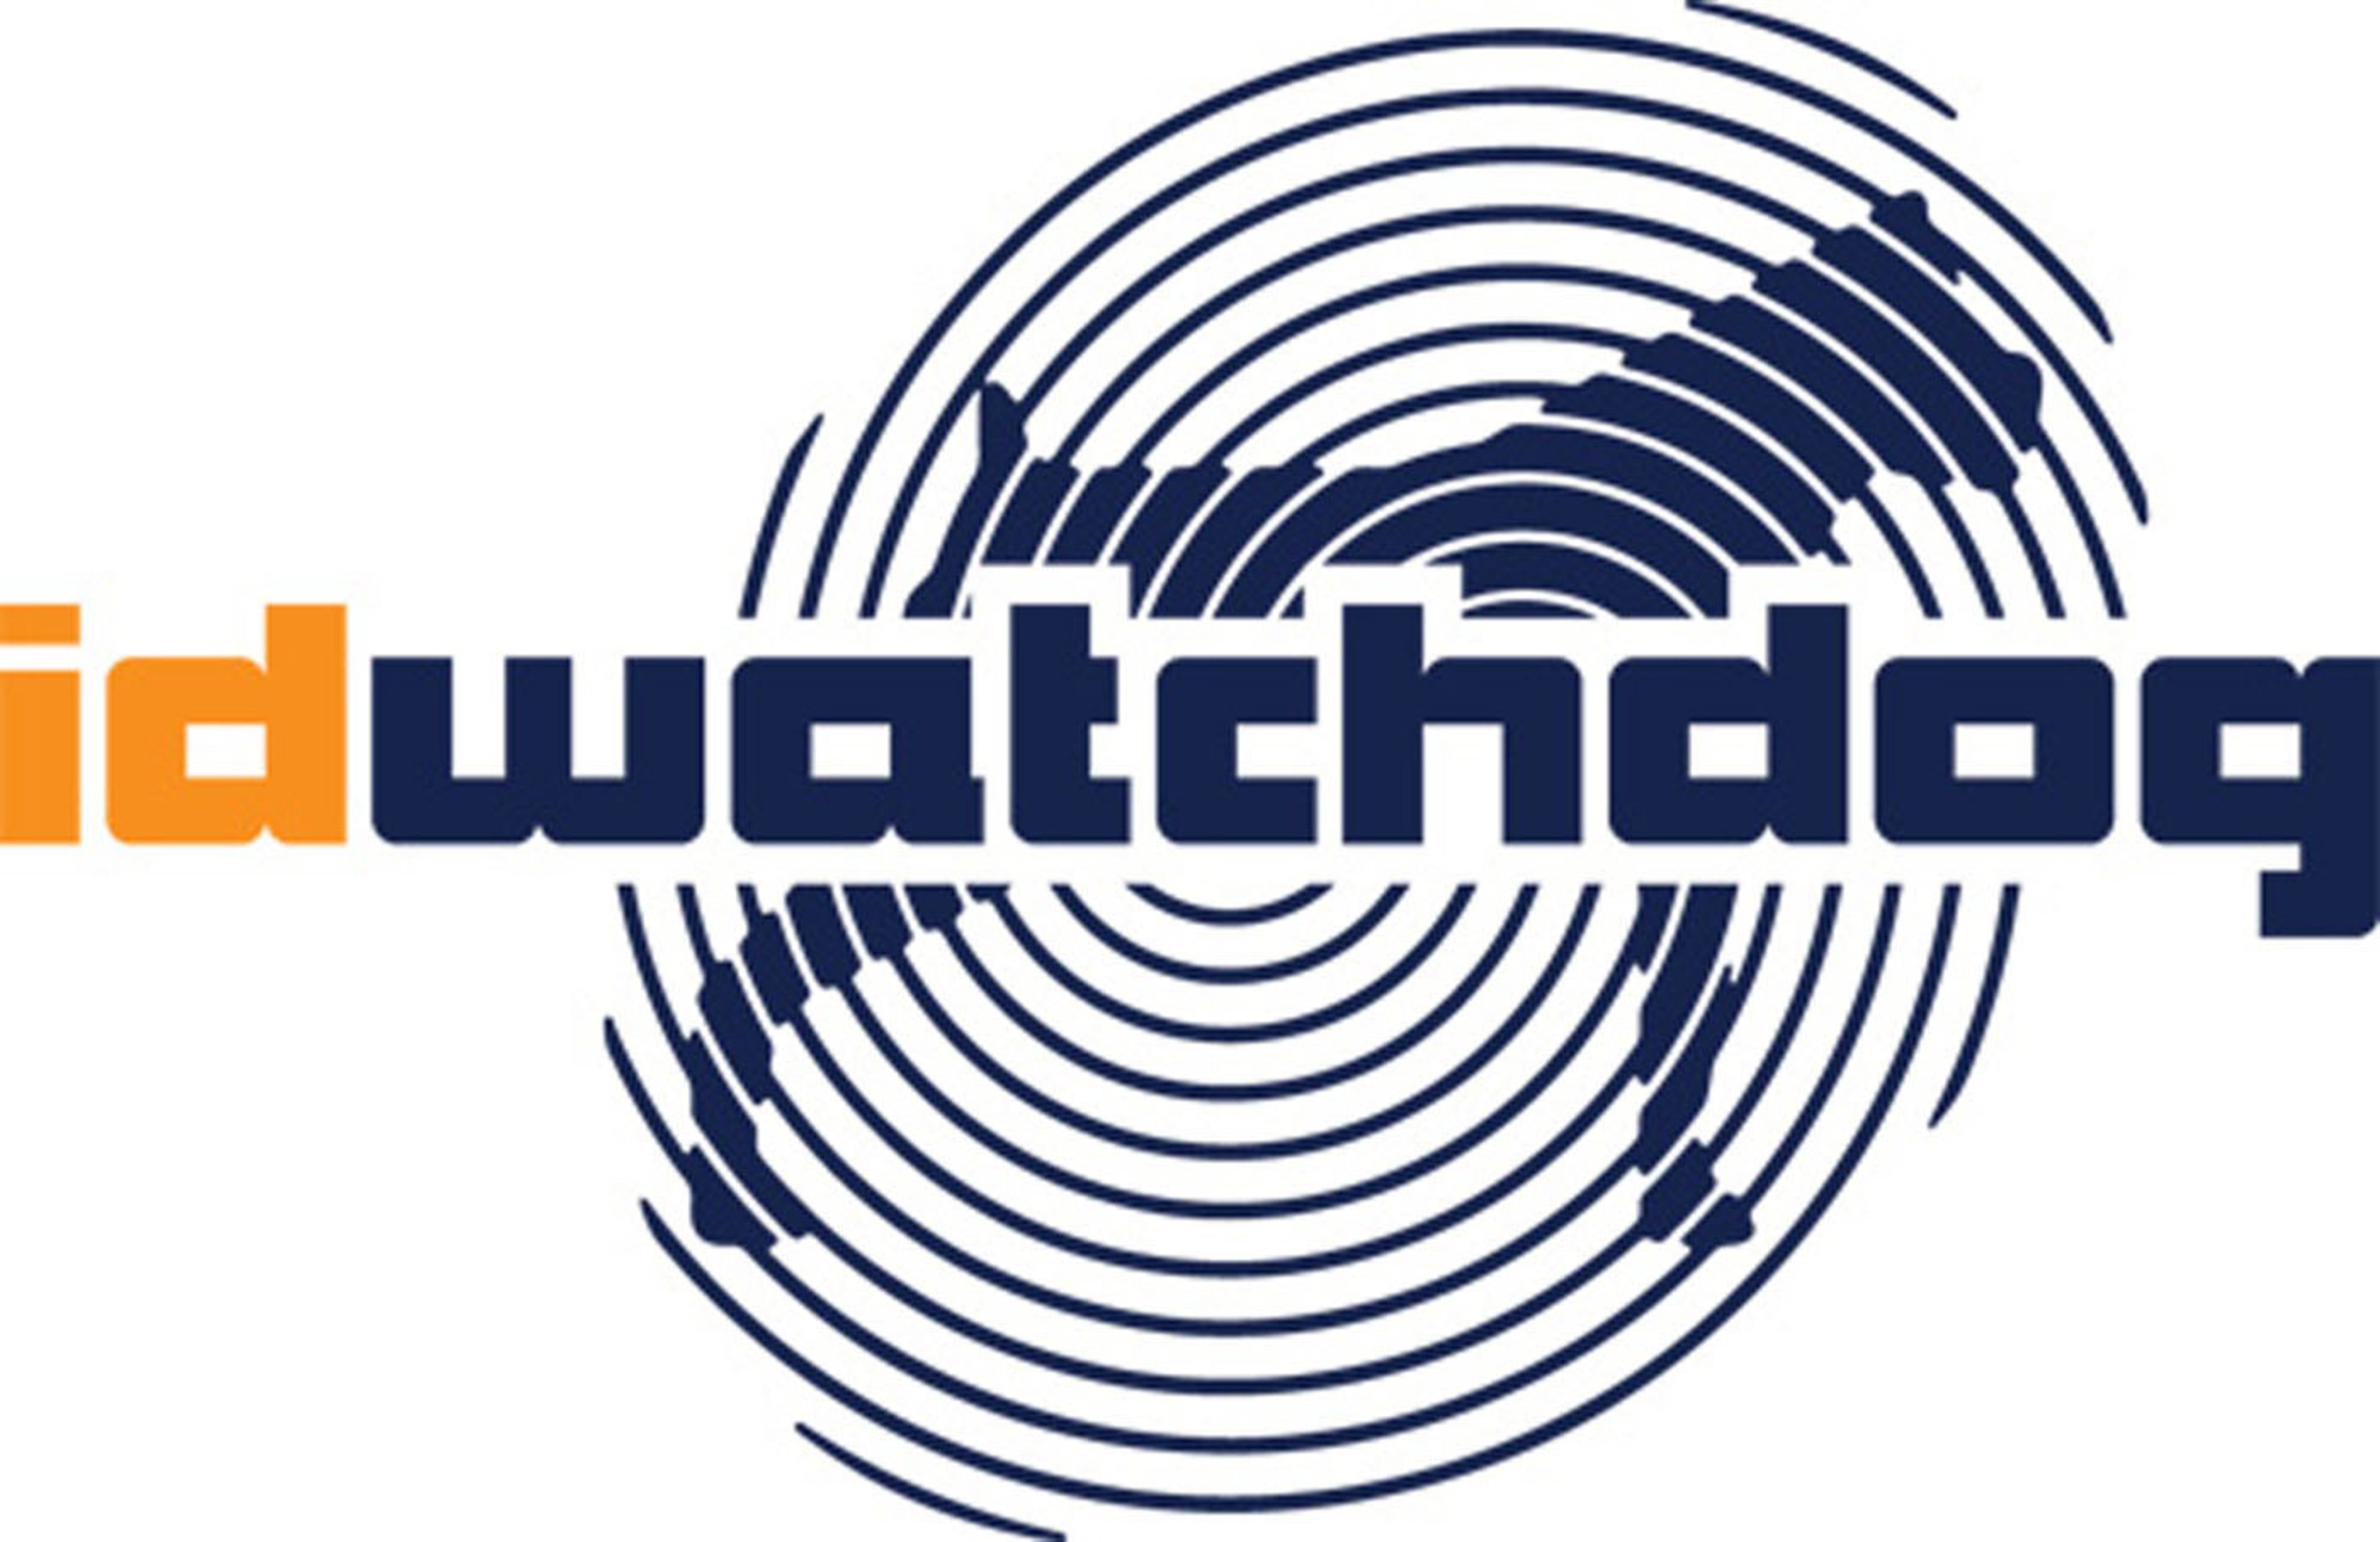 ID Watchdog, Inc. logo.